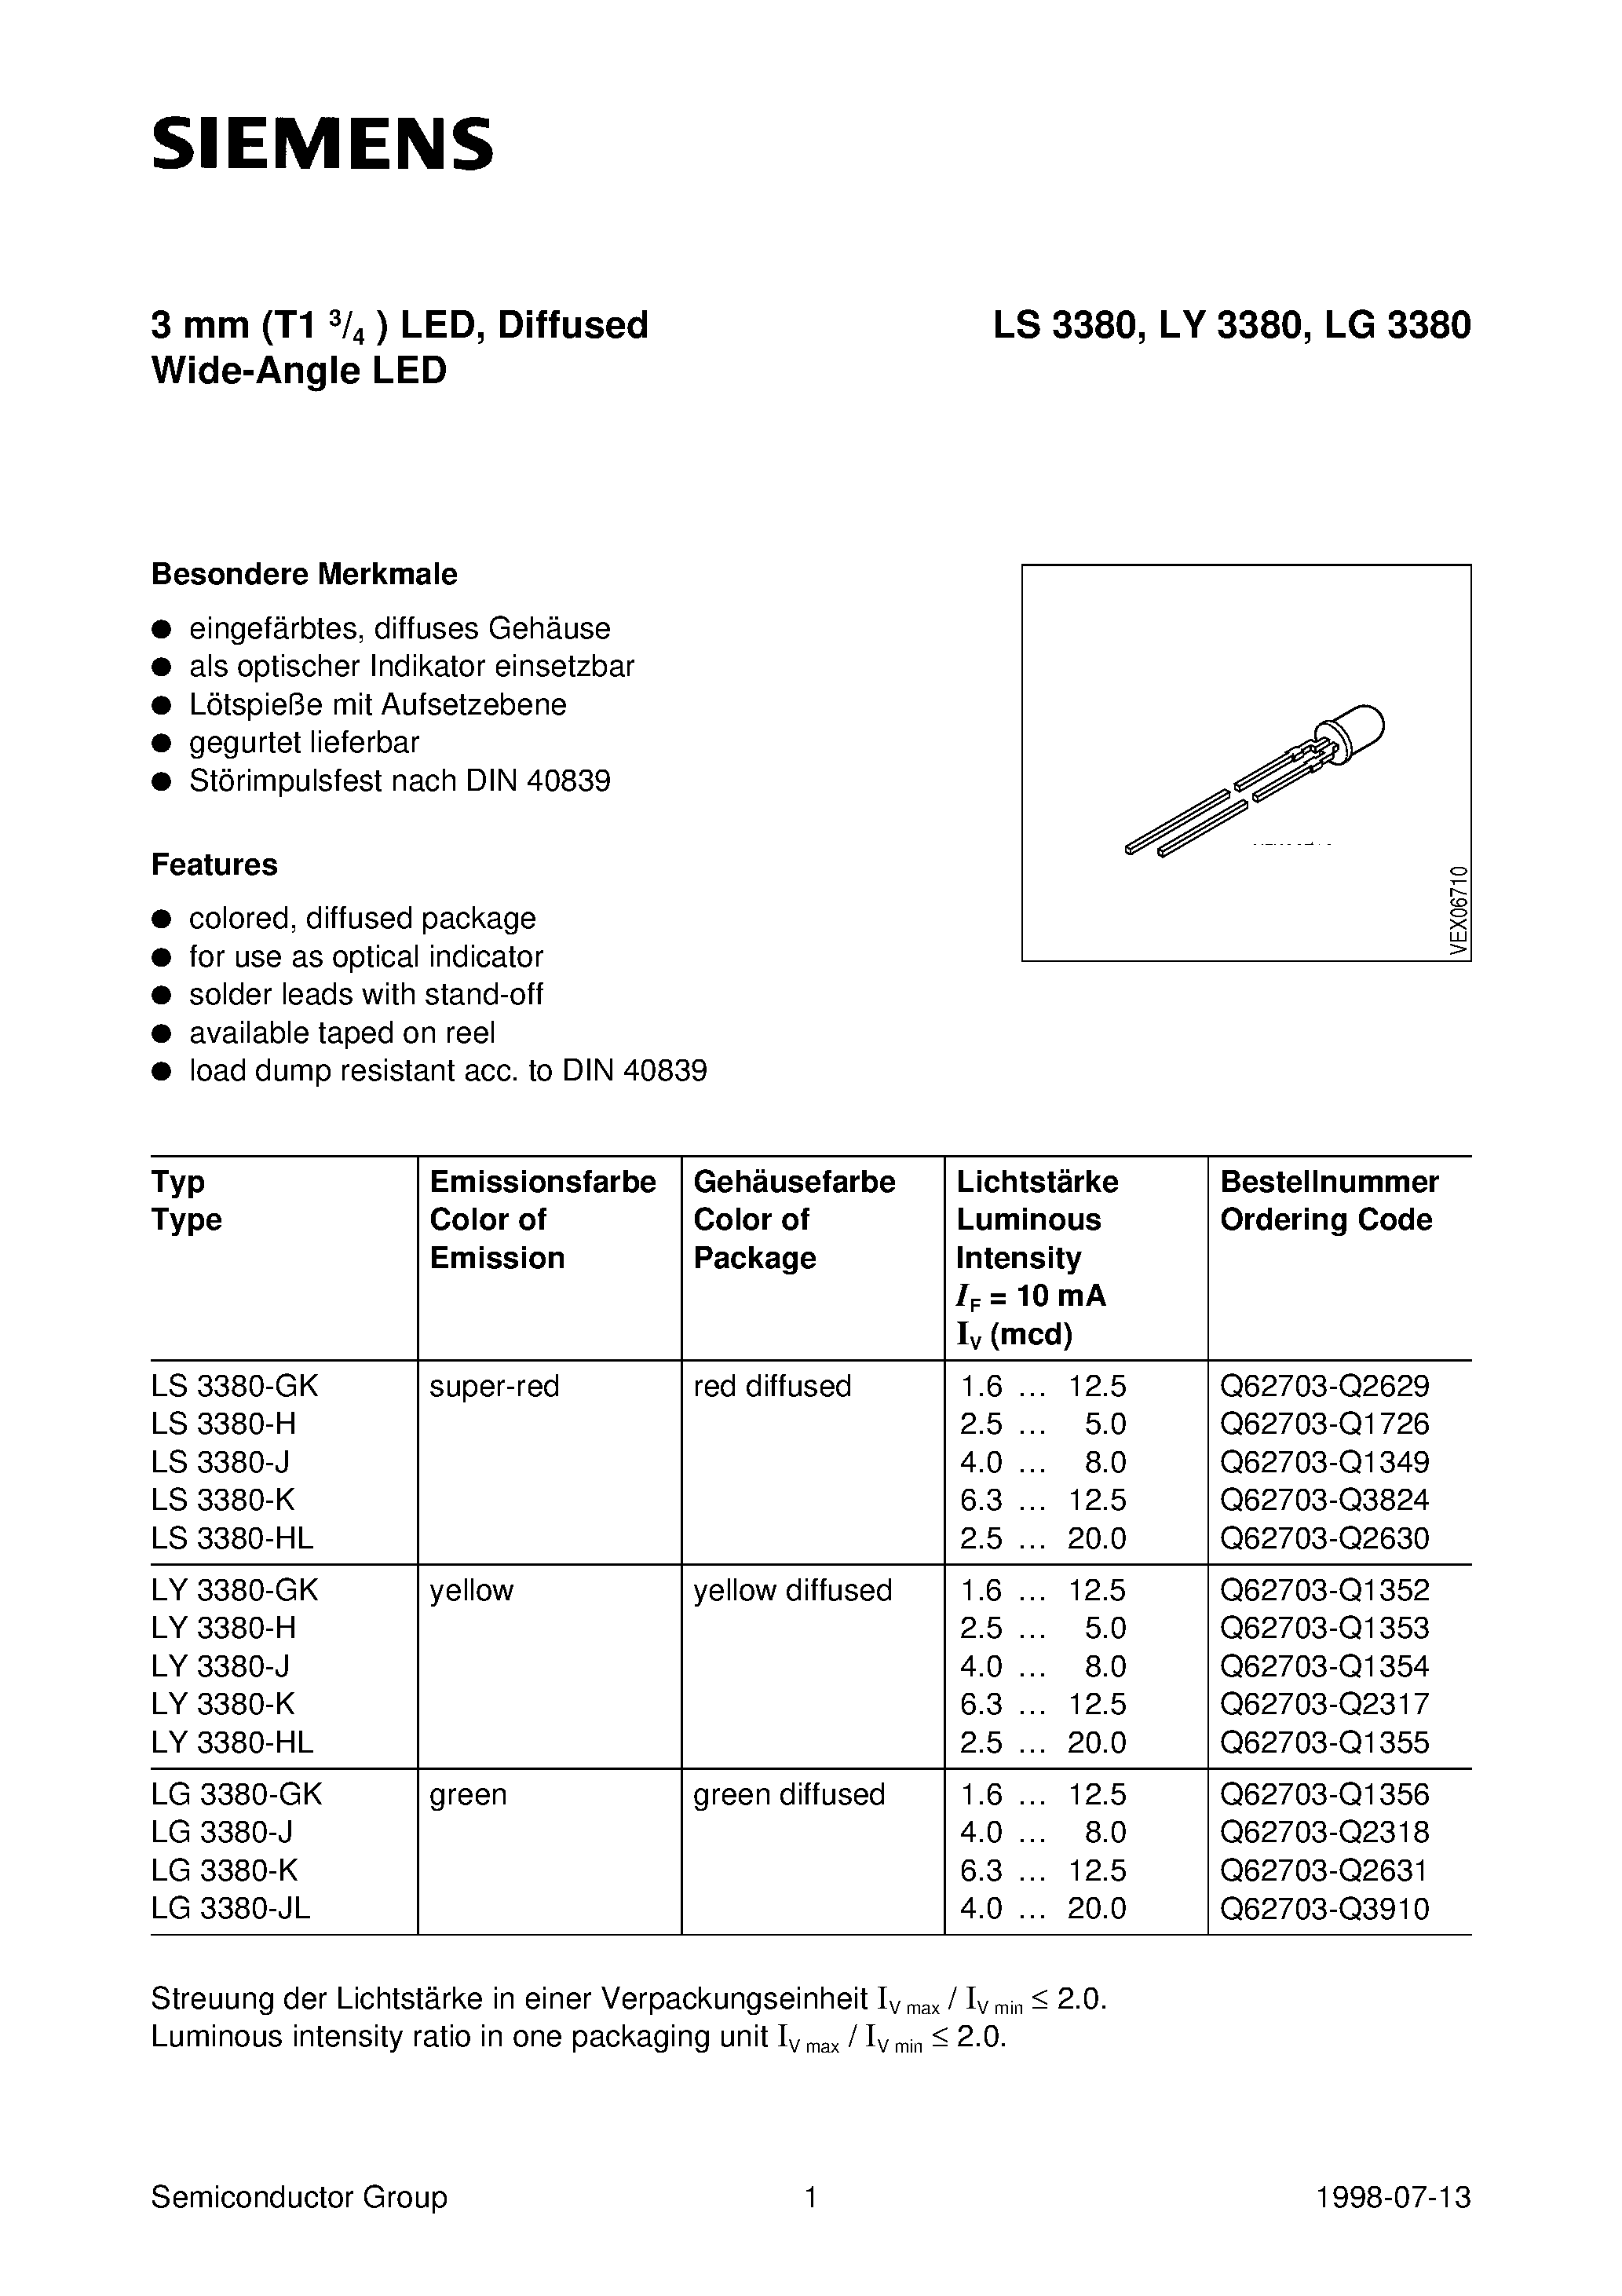 Даташит LS3380-J - 3 mm T1 3/4 LED / Diffused Wide-Angle LED страница 1